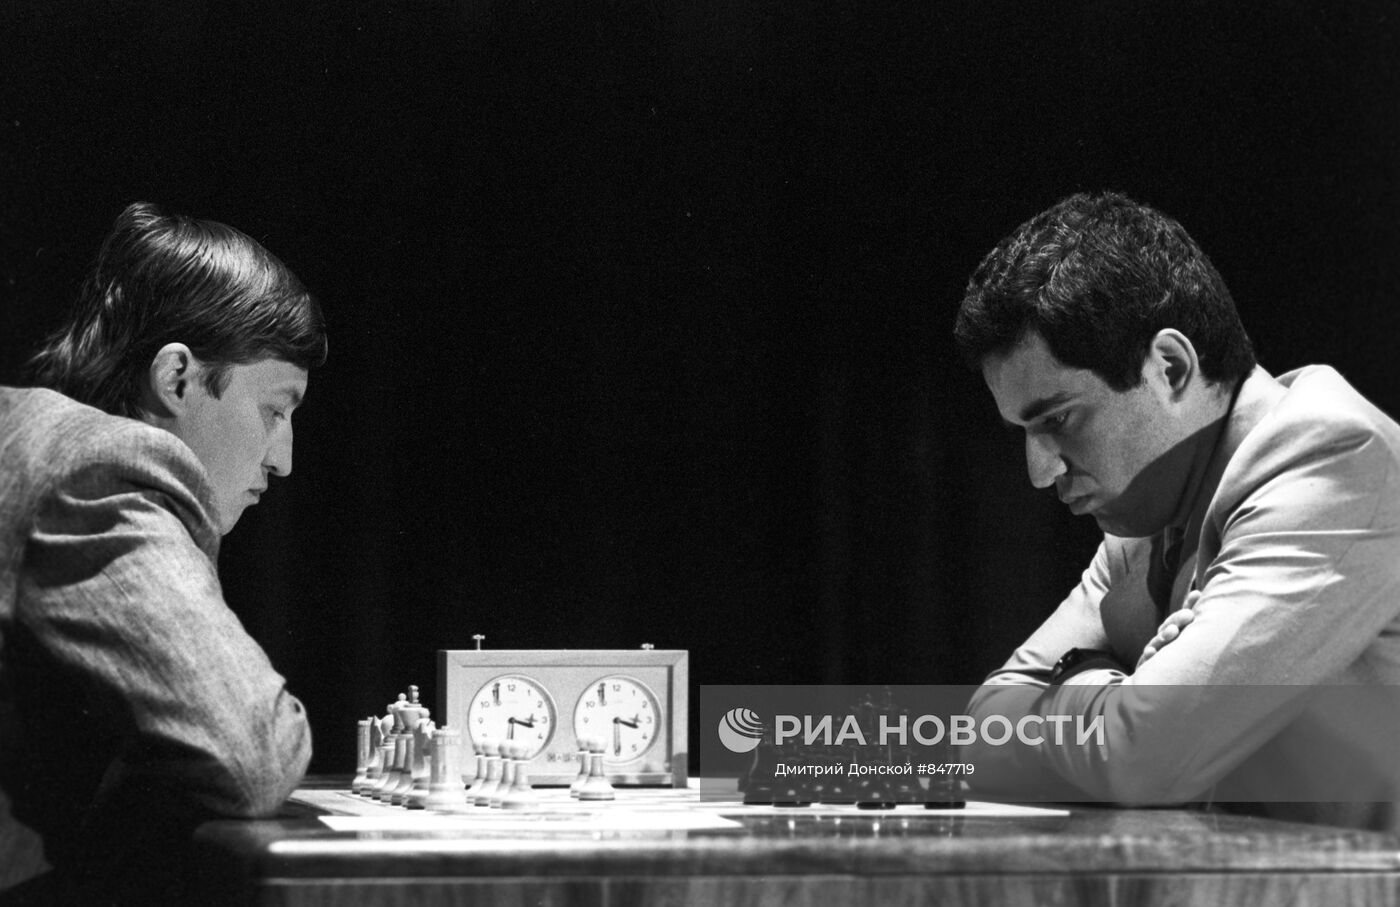 Чемпион мира по шахматам Г.Каспаров и экс-чемпион мира А.Карпов